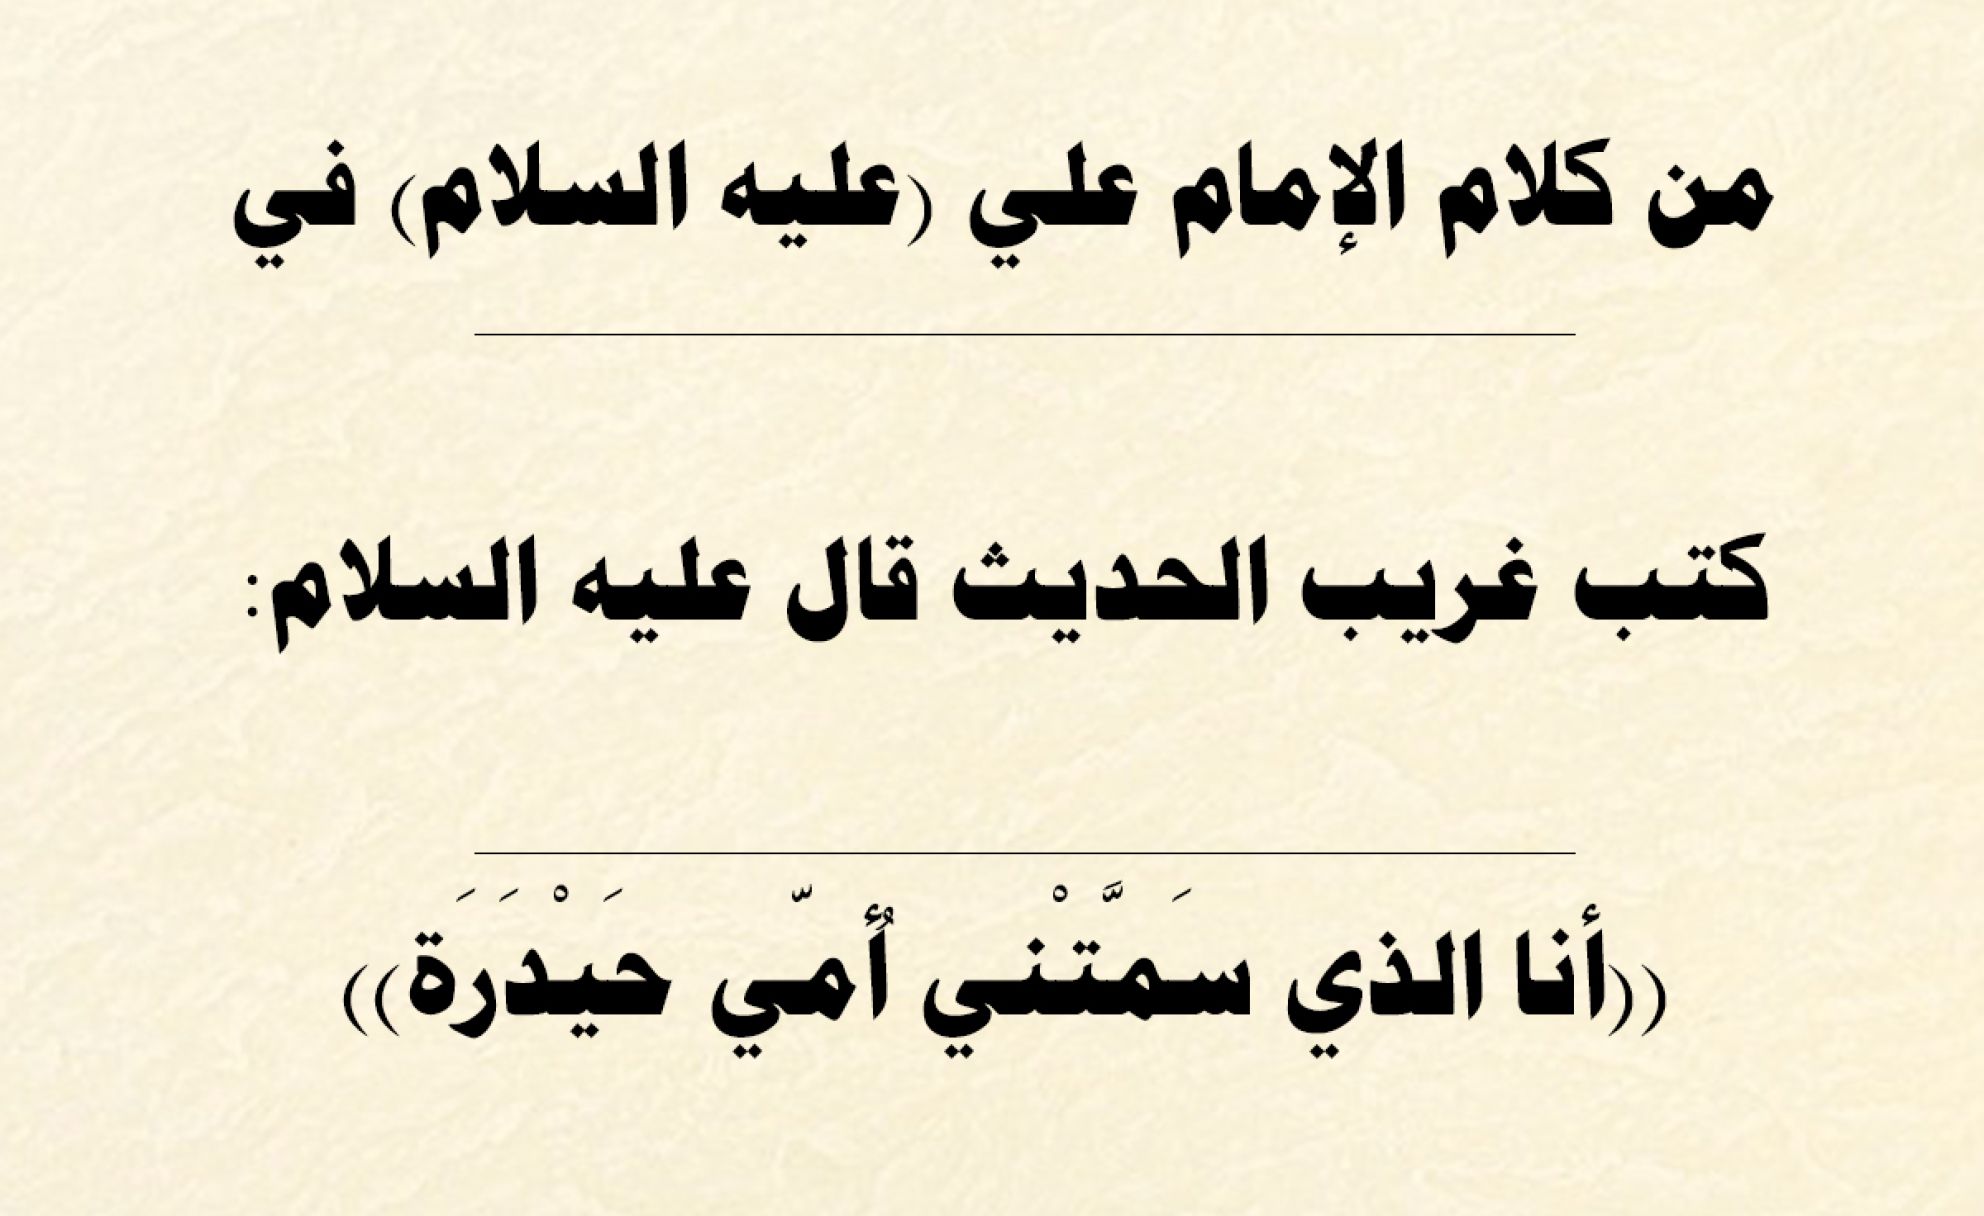 من كلام الإمام علي (عليه السلام) في كتب غريب الحديث قال عليه السلام: ((أنا الذي سَمَّتْني أُمّي حَيْدَرَة))